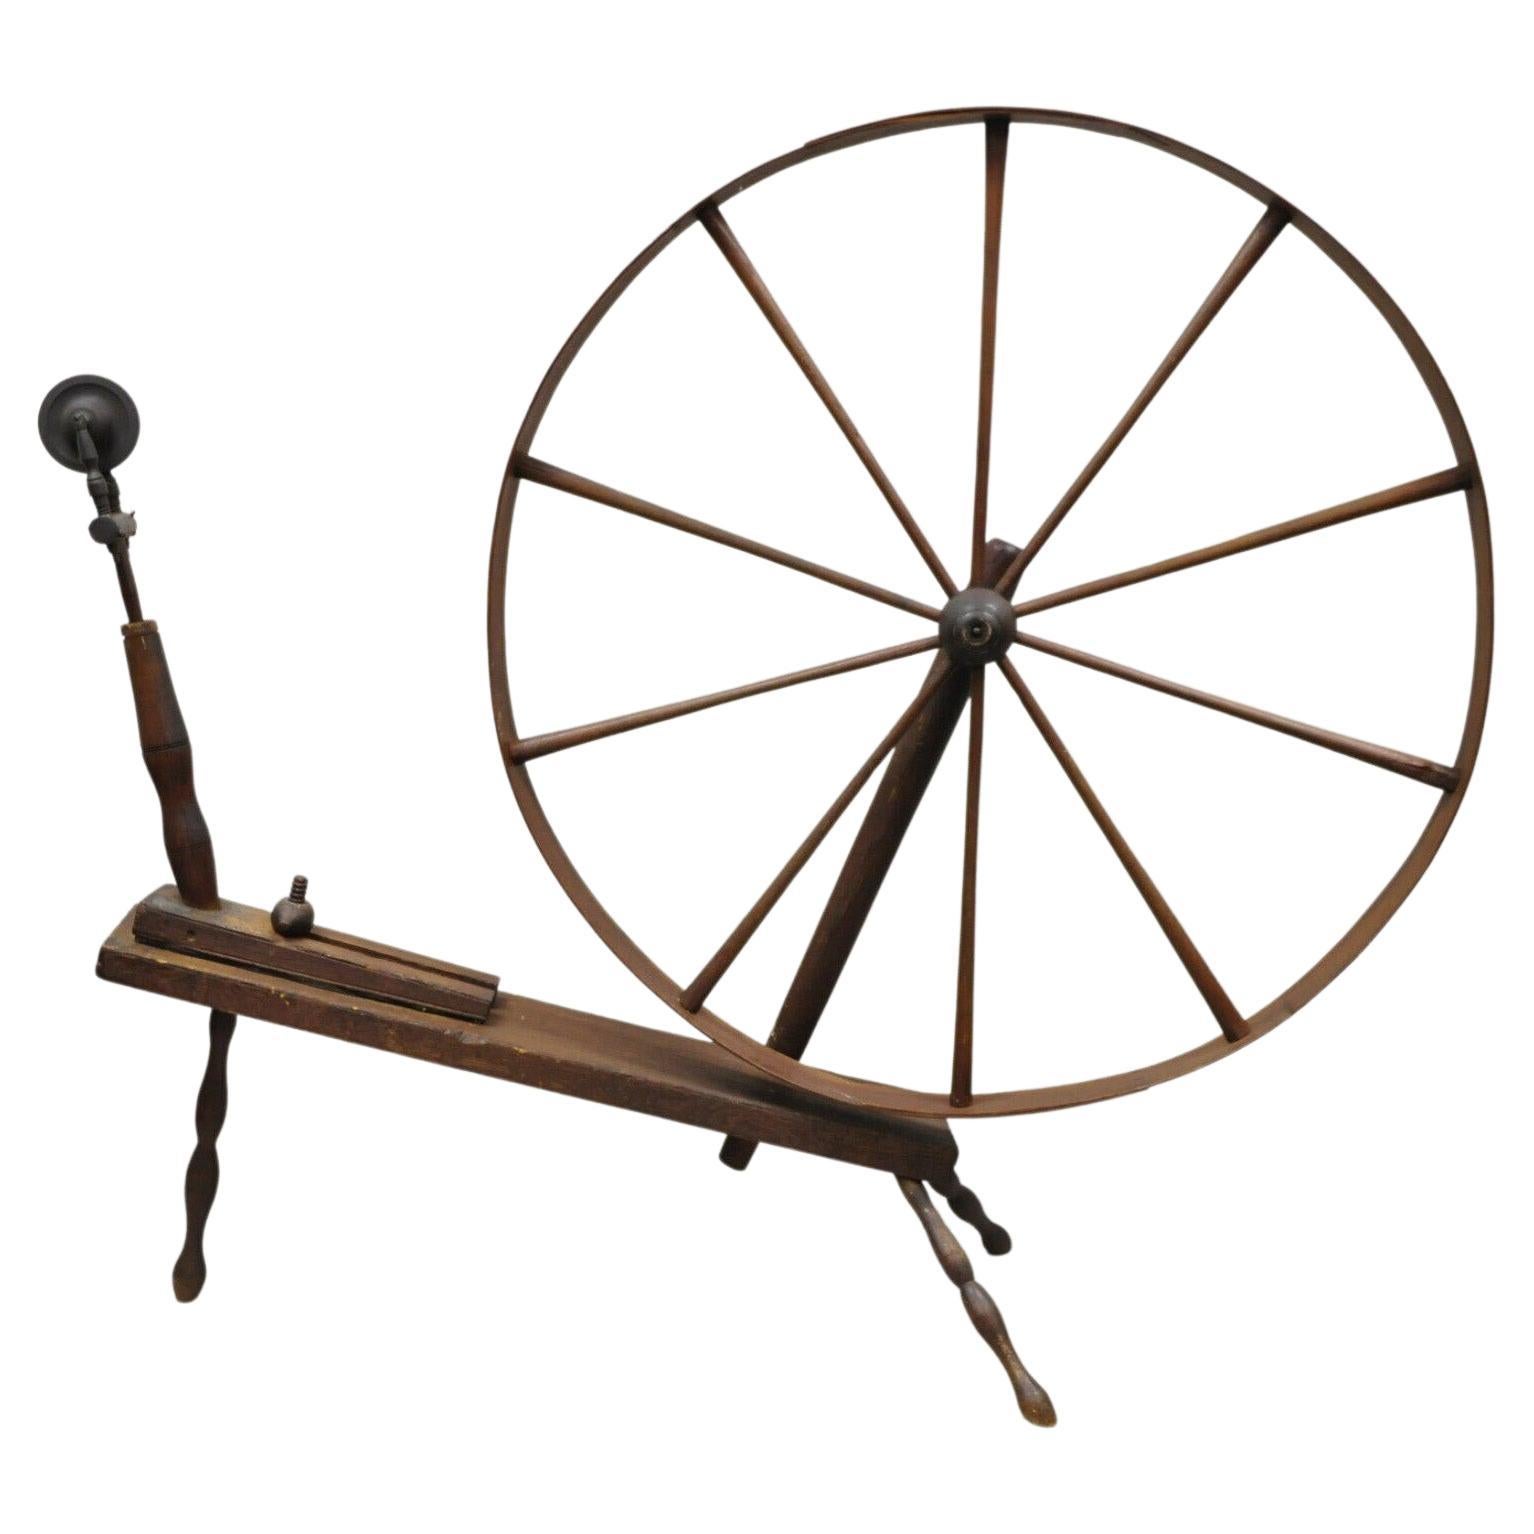 roue tournante coloniale américaine primitive ancienne en bois